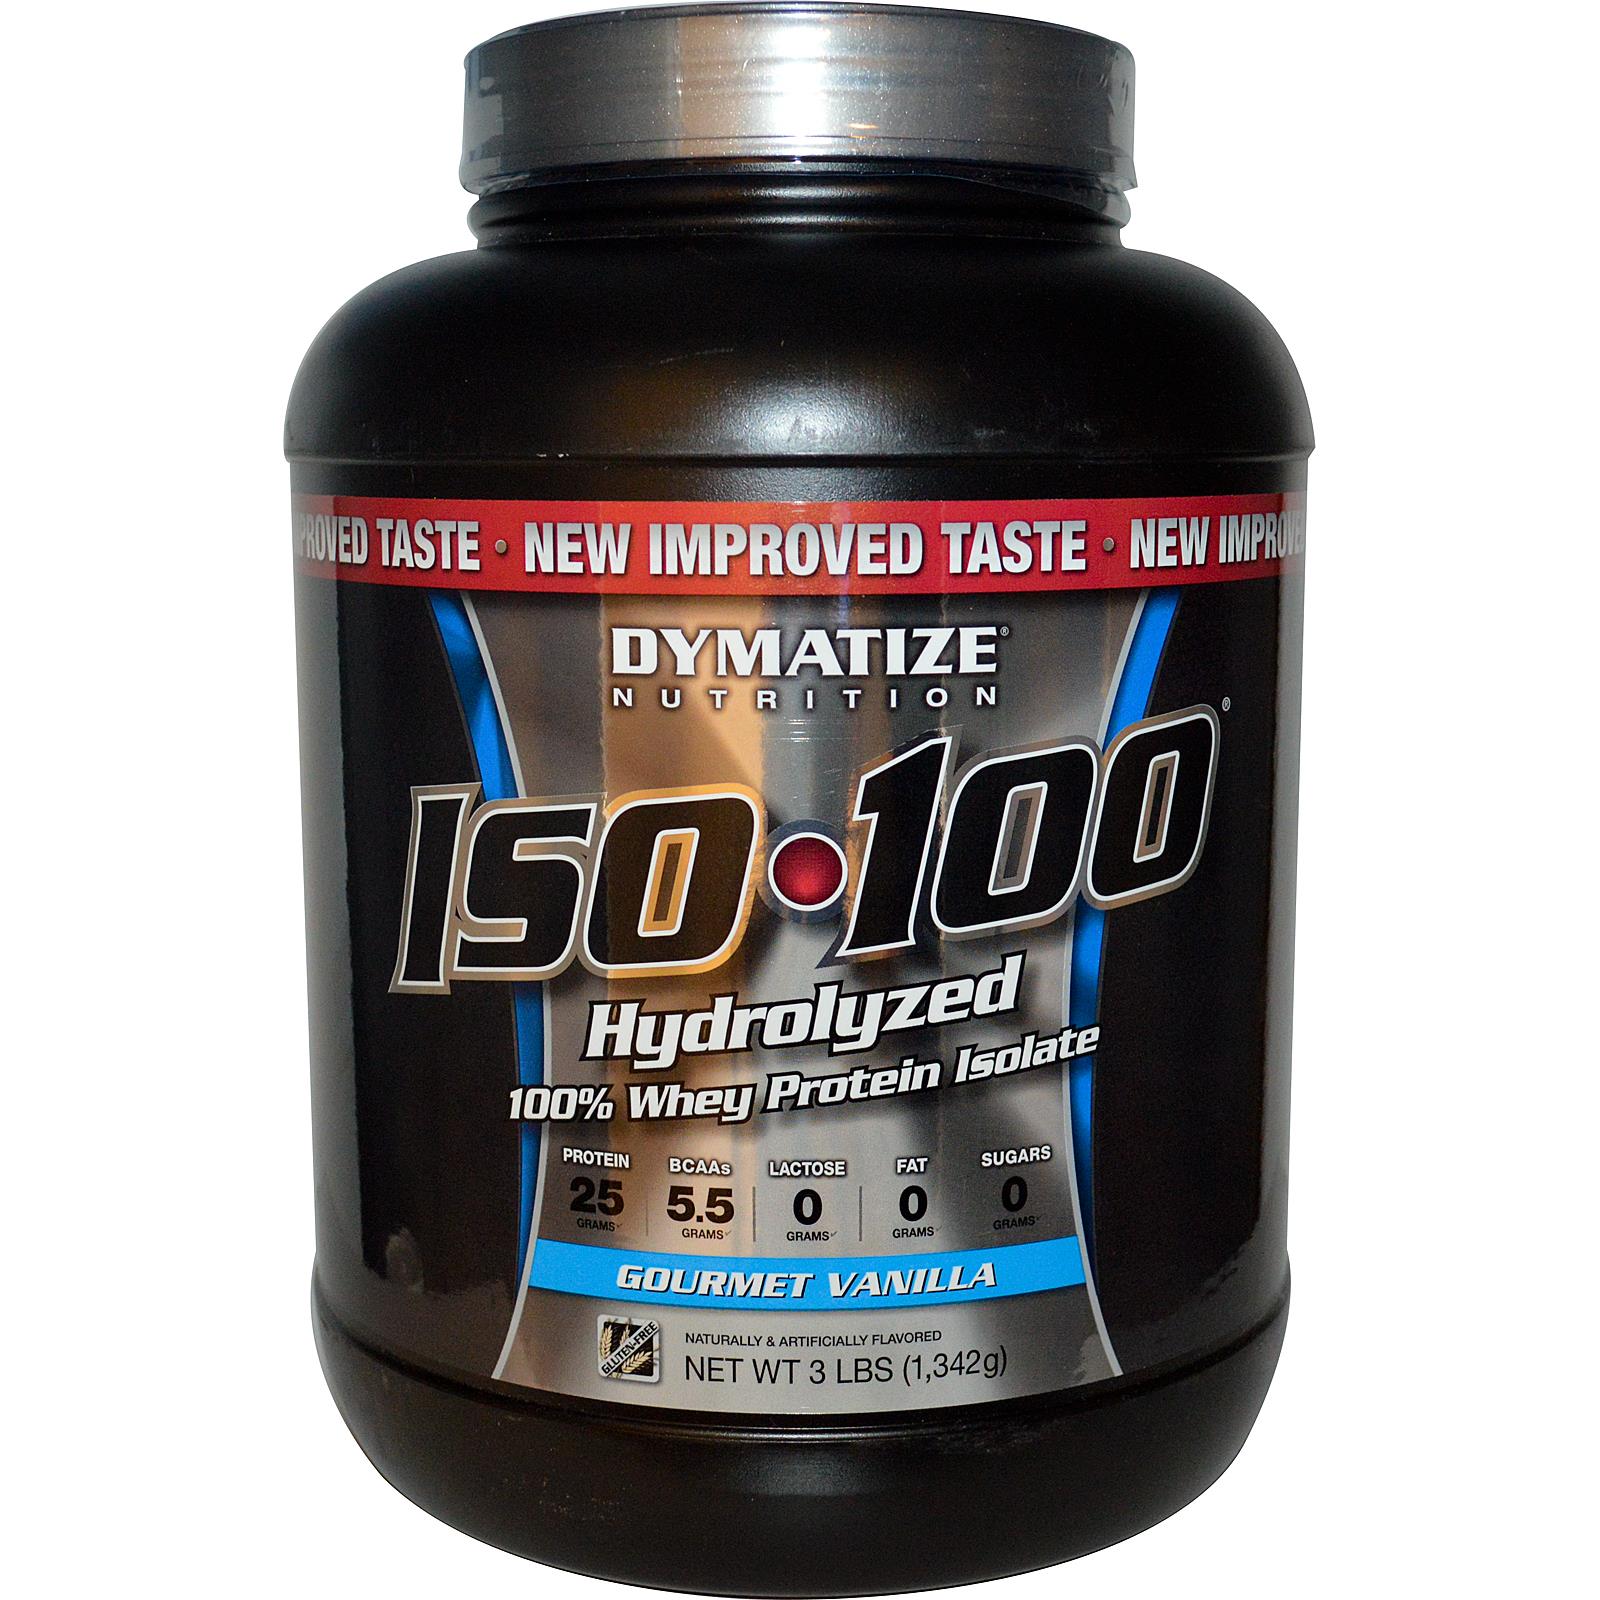 Гидролизат изолята. Dymatize ISO 100 hydrolyzed. Изолят протеина Dymatize ISO-100. Протеин Dymatize ISO-100 (1360 Г). Whey 100 протеин Pina Colada.